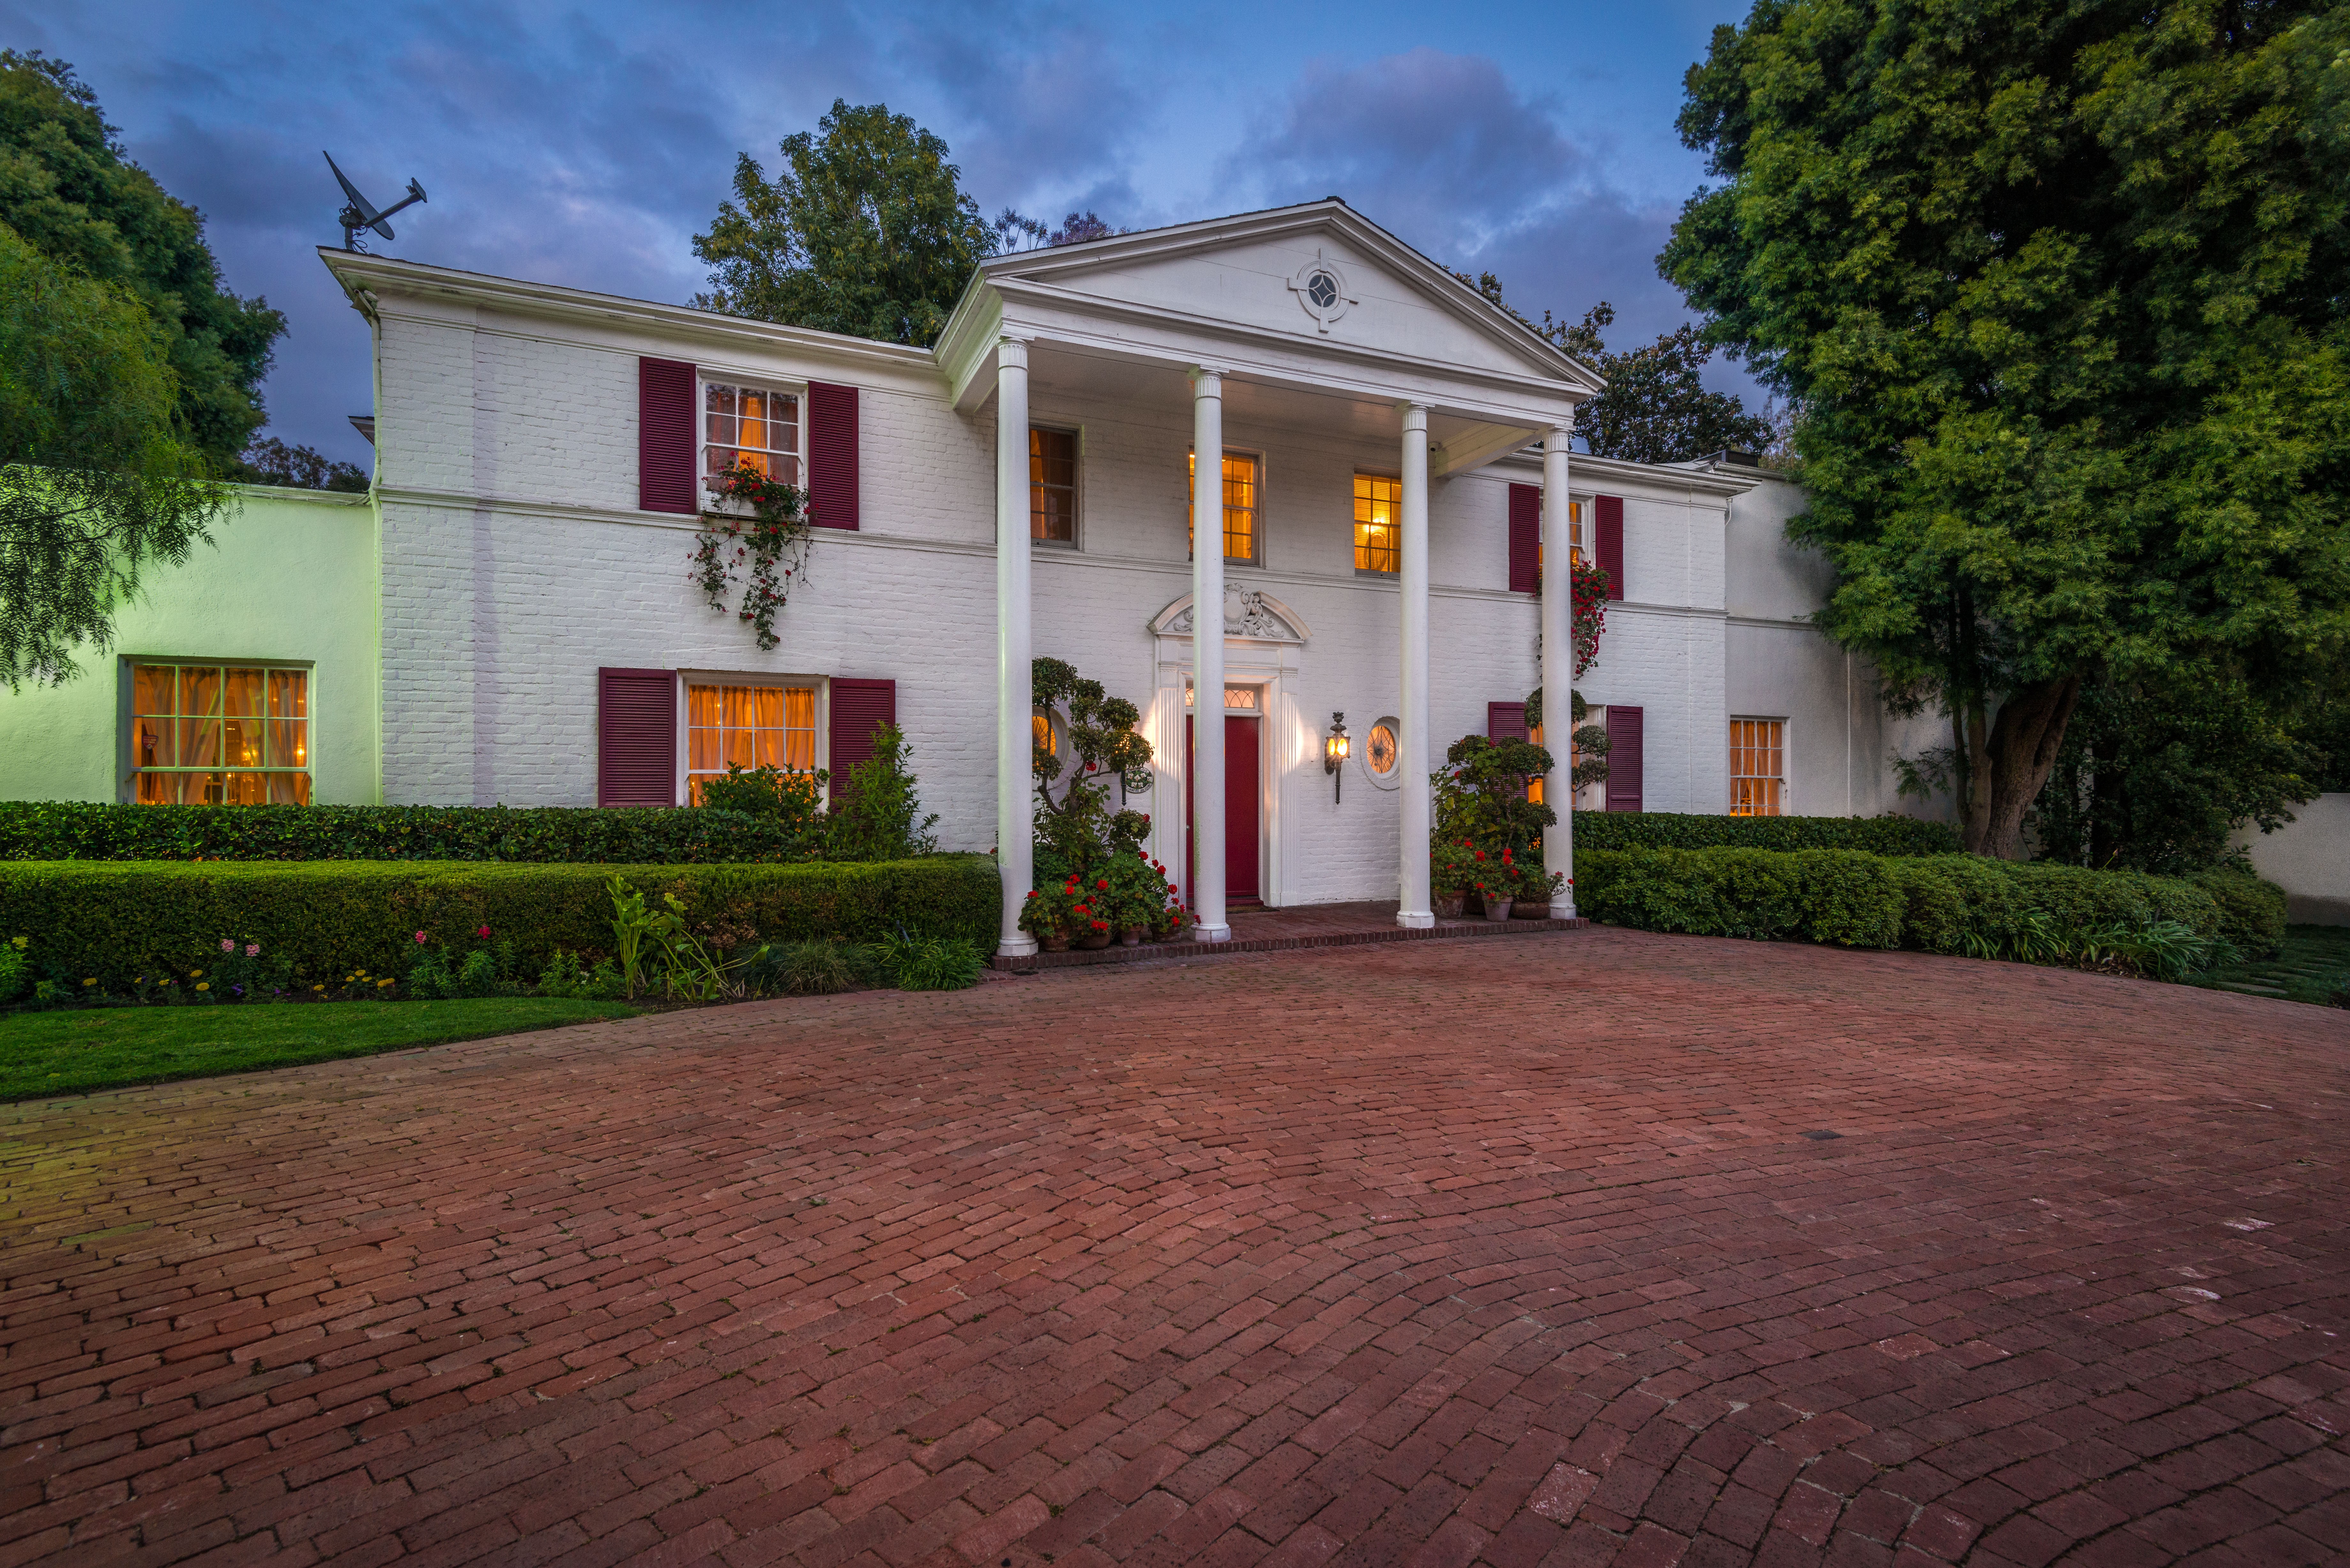 Audrey Hepburn, Eva Gabor, Mia Farrow and David Niven have all lived at Holmby Hills mansion